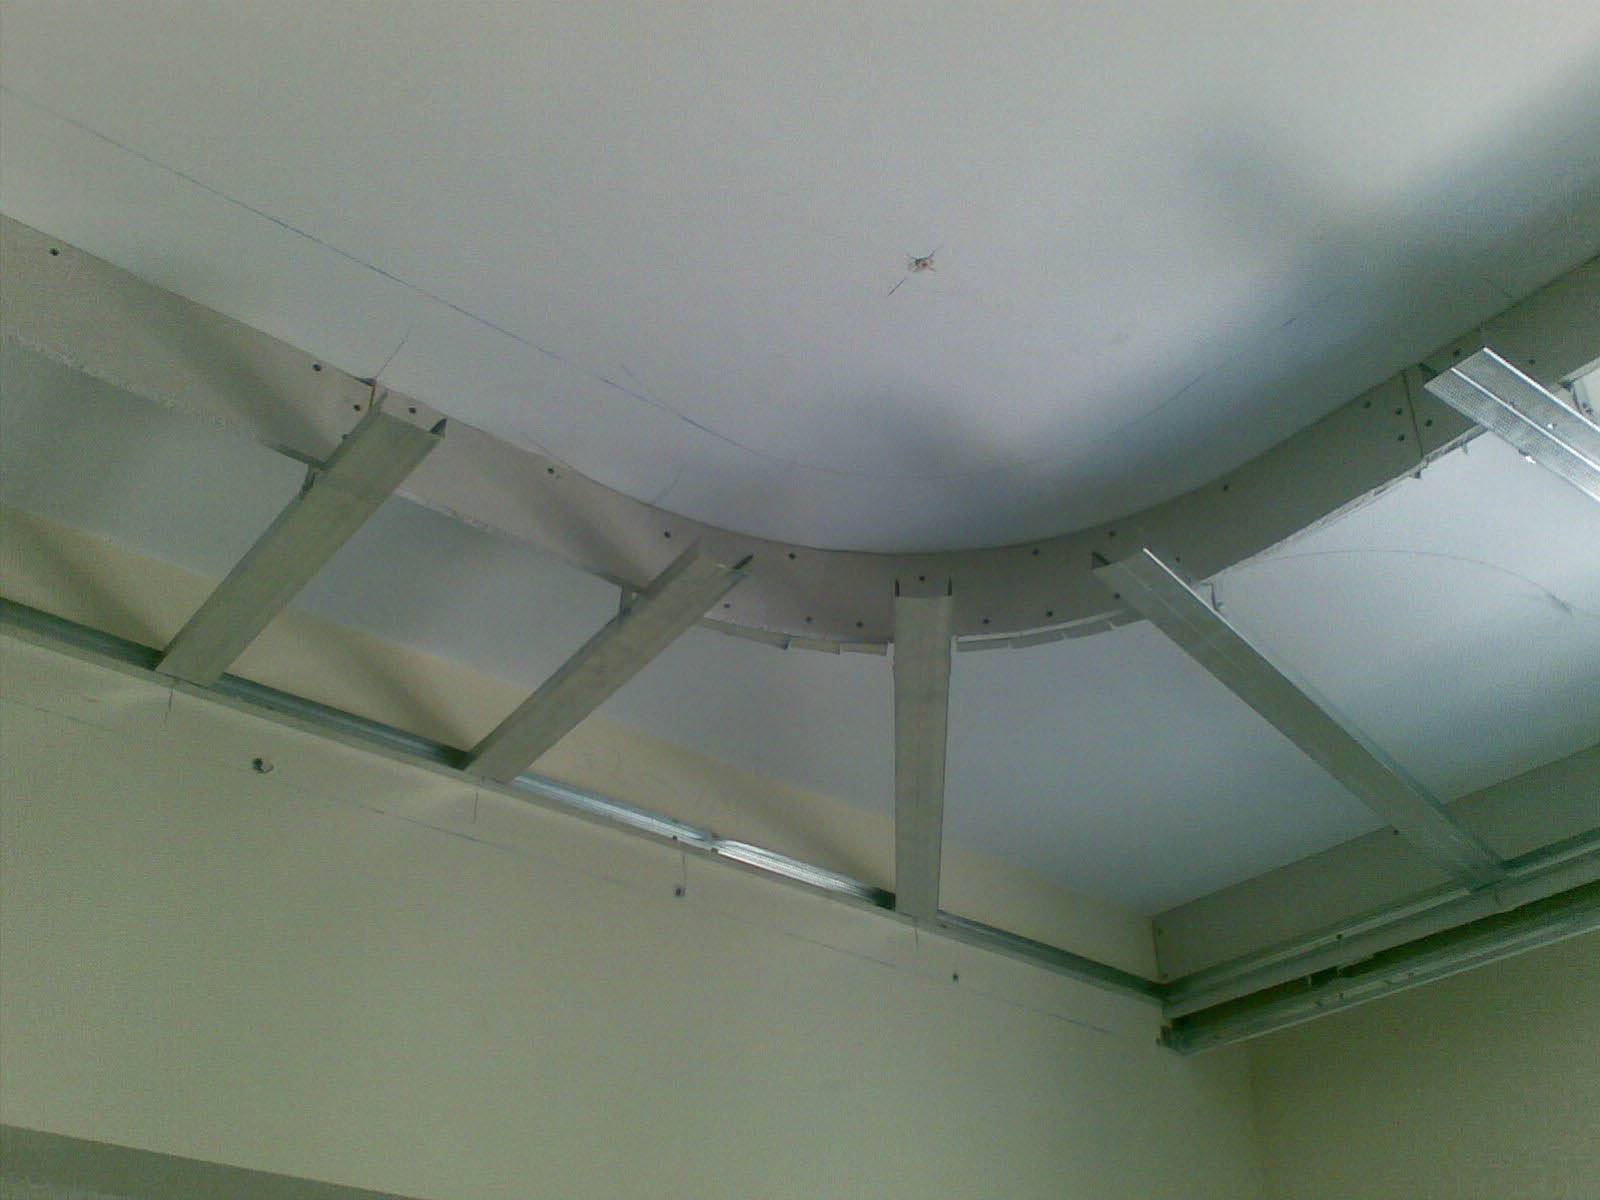 Двухуровневые потолки из гипсокартона с подсветкой своими руками: как сделать двухуровневую конструкцию с подсветкой